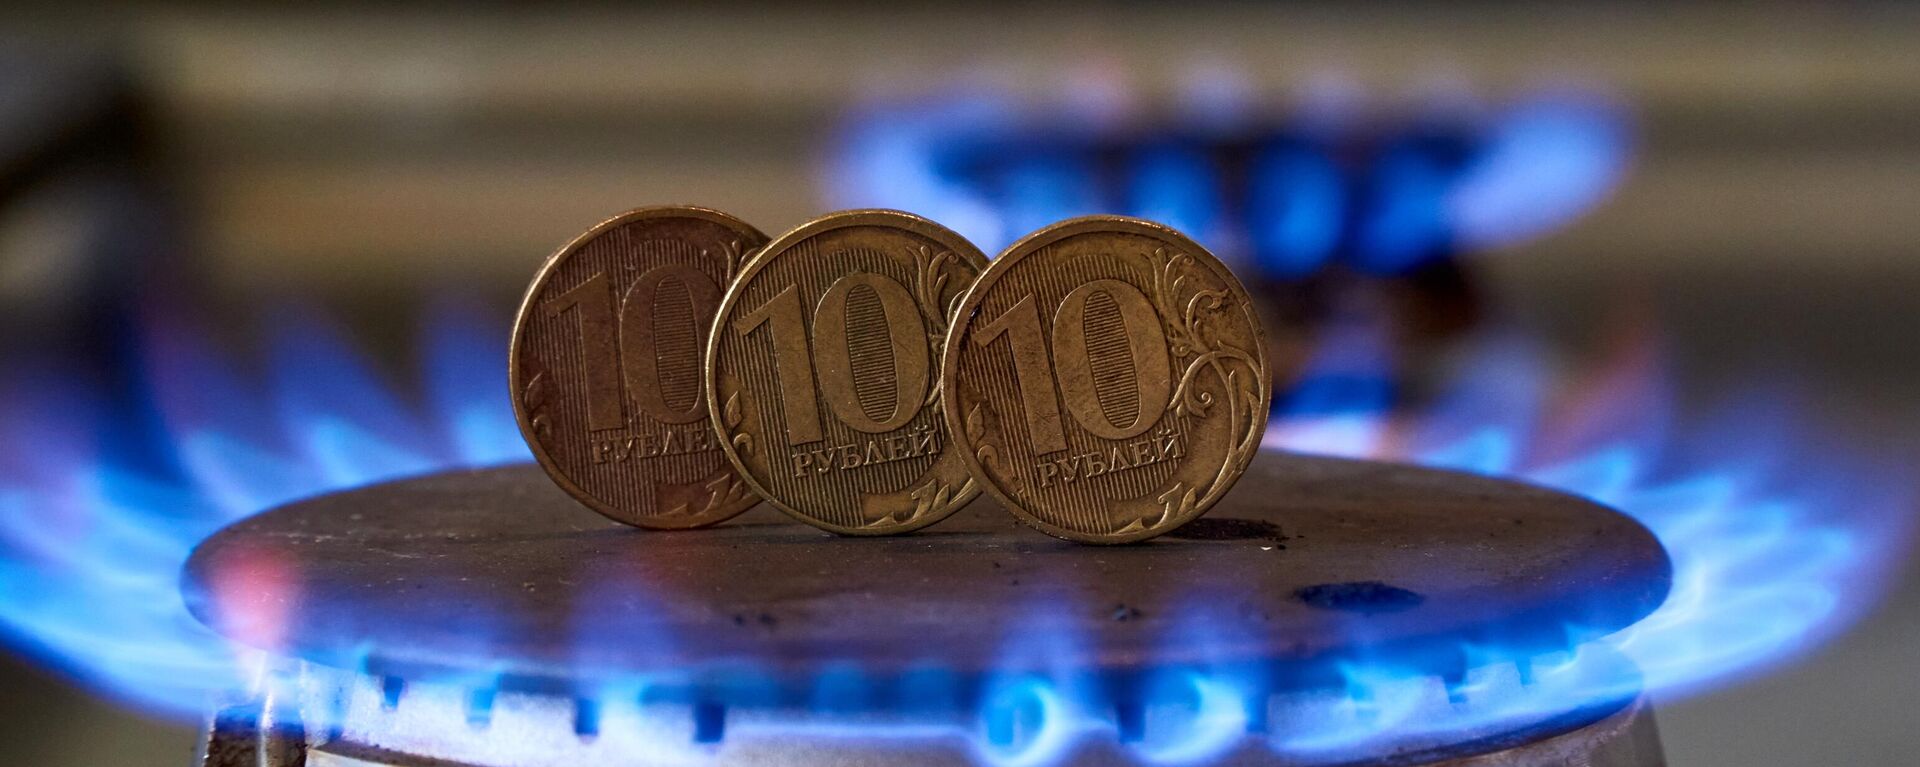 Монеты номиналам десять рублей на газовой плите - Sputnik Латвия, 1920, 09.04.2022